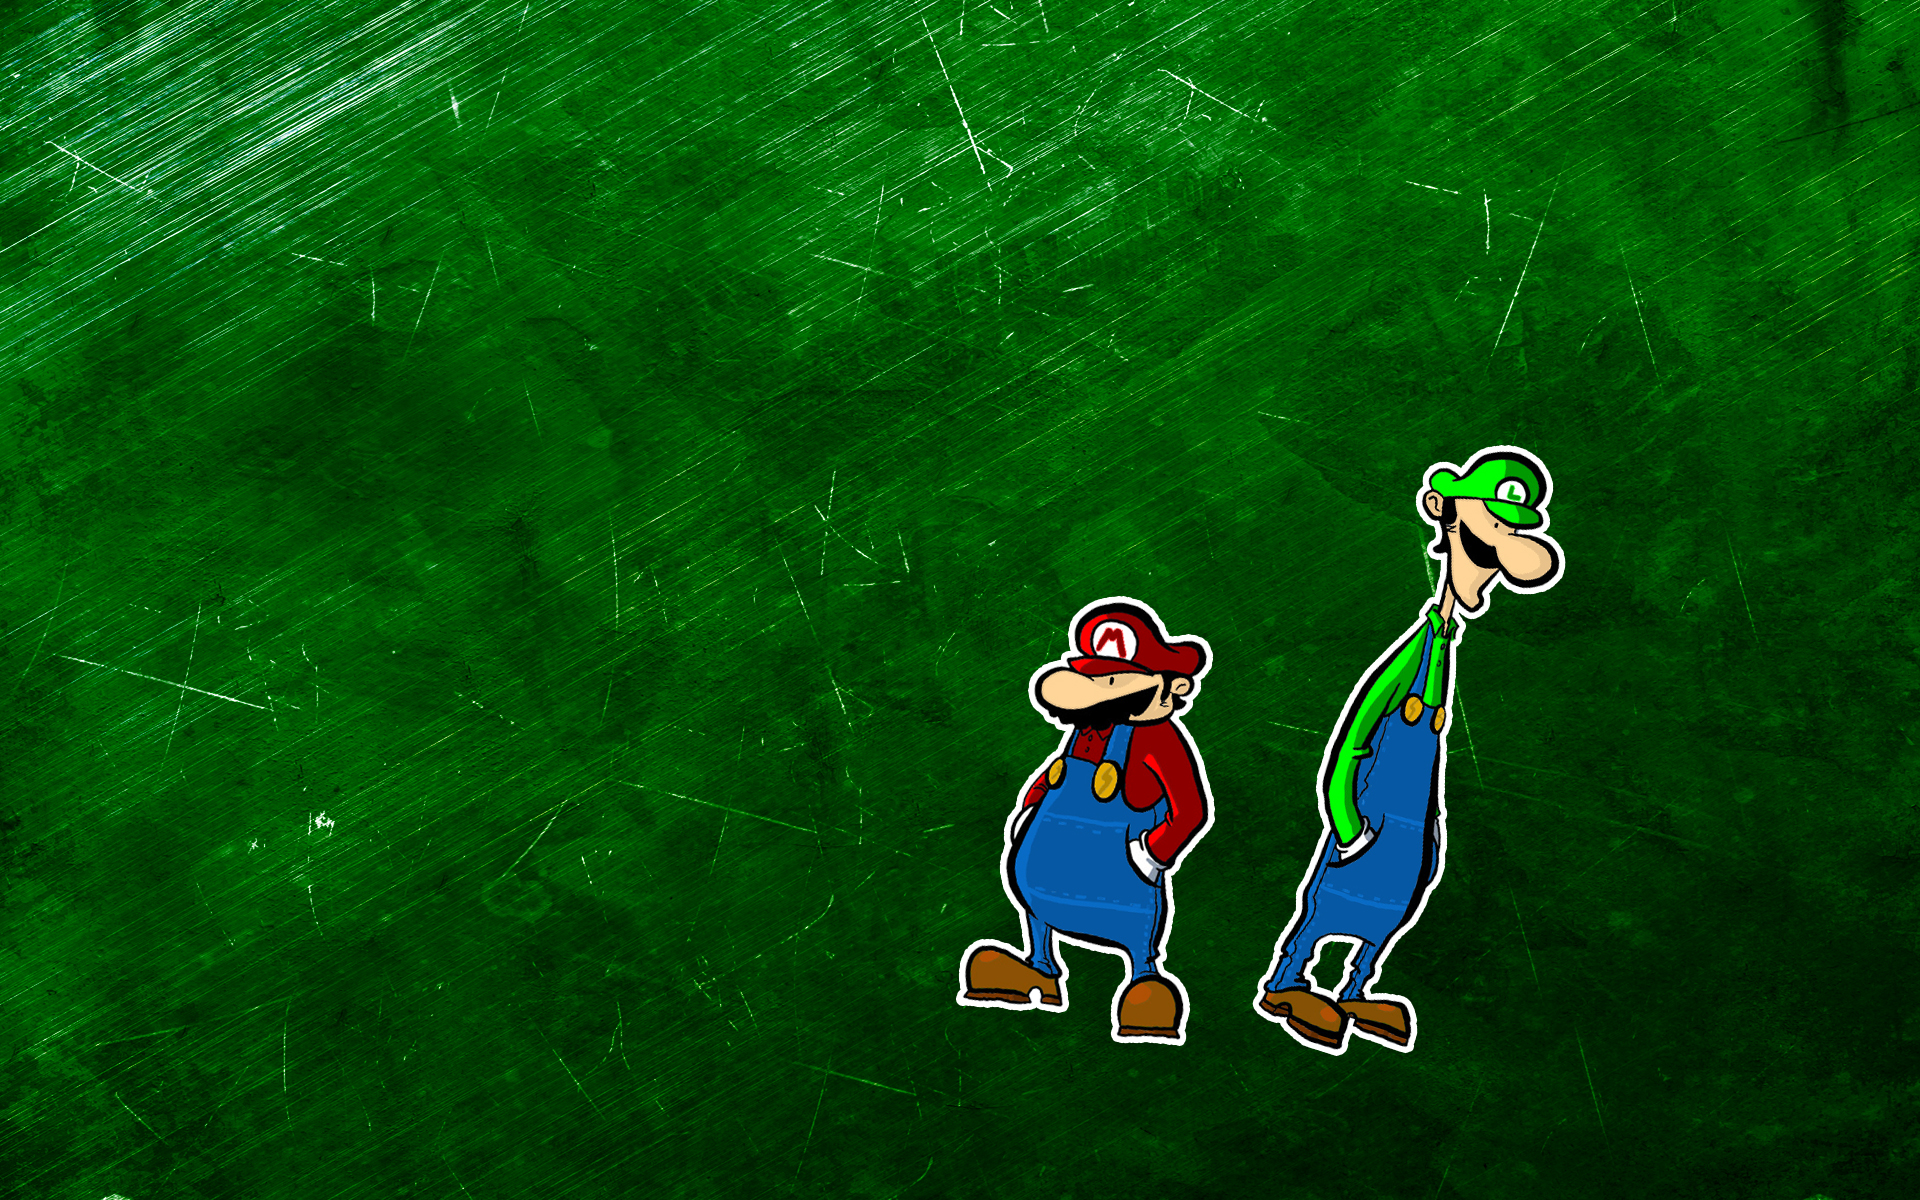 Mario, Mario Bros, Luigi - desktop wallpaper